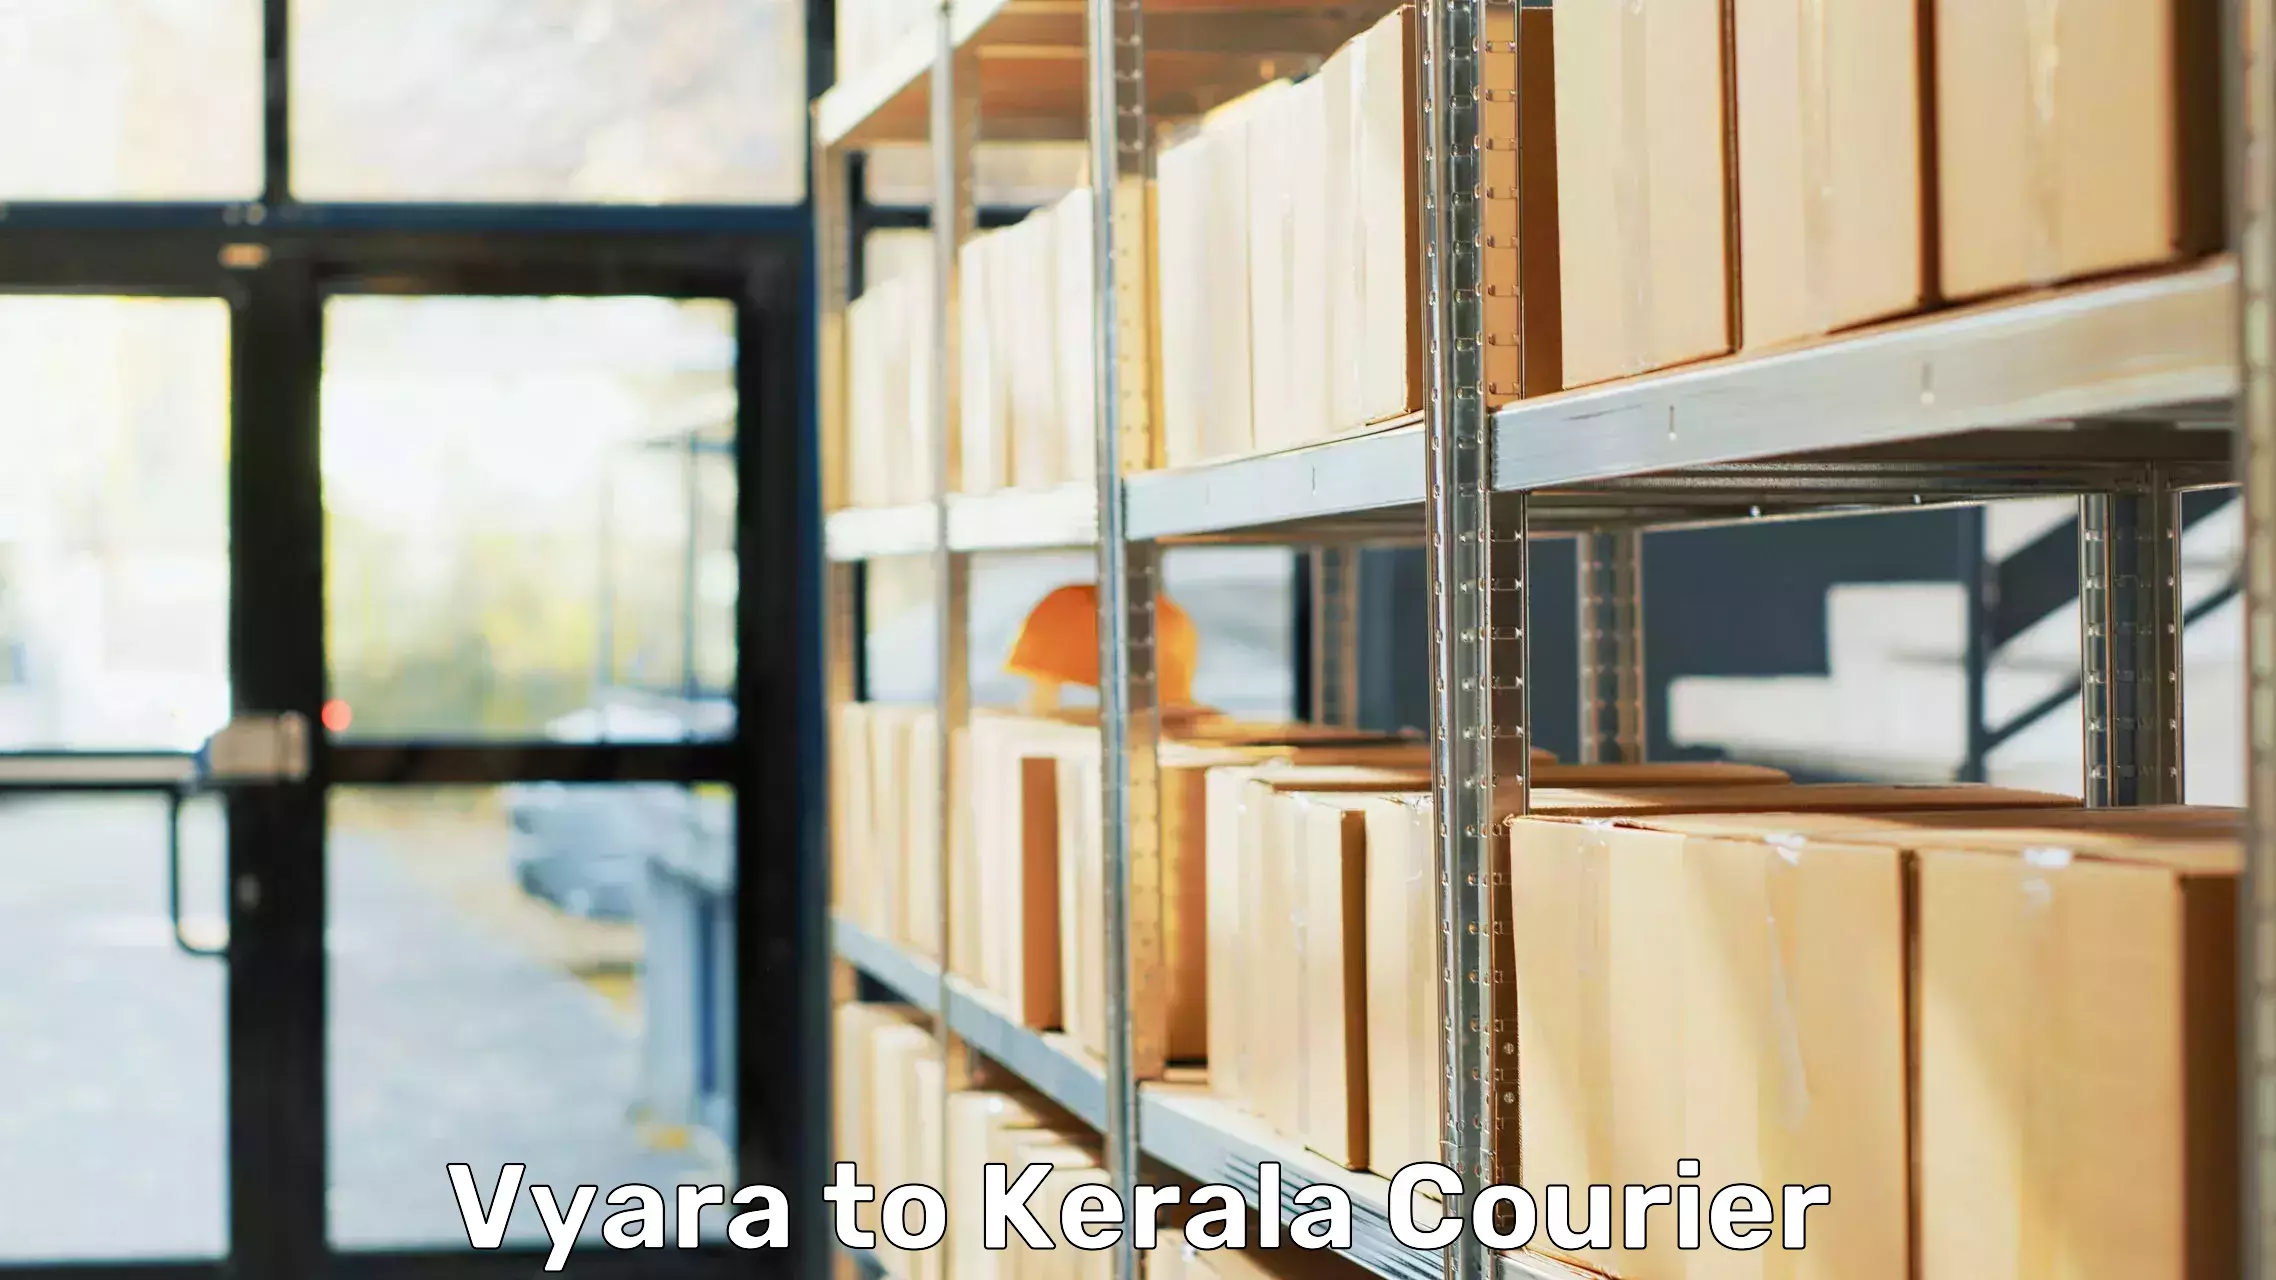 Furniture moving assistance Vyara to Kerala